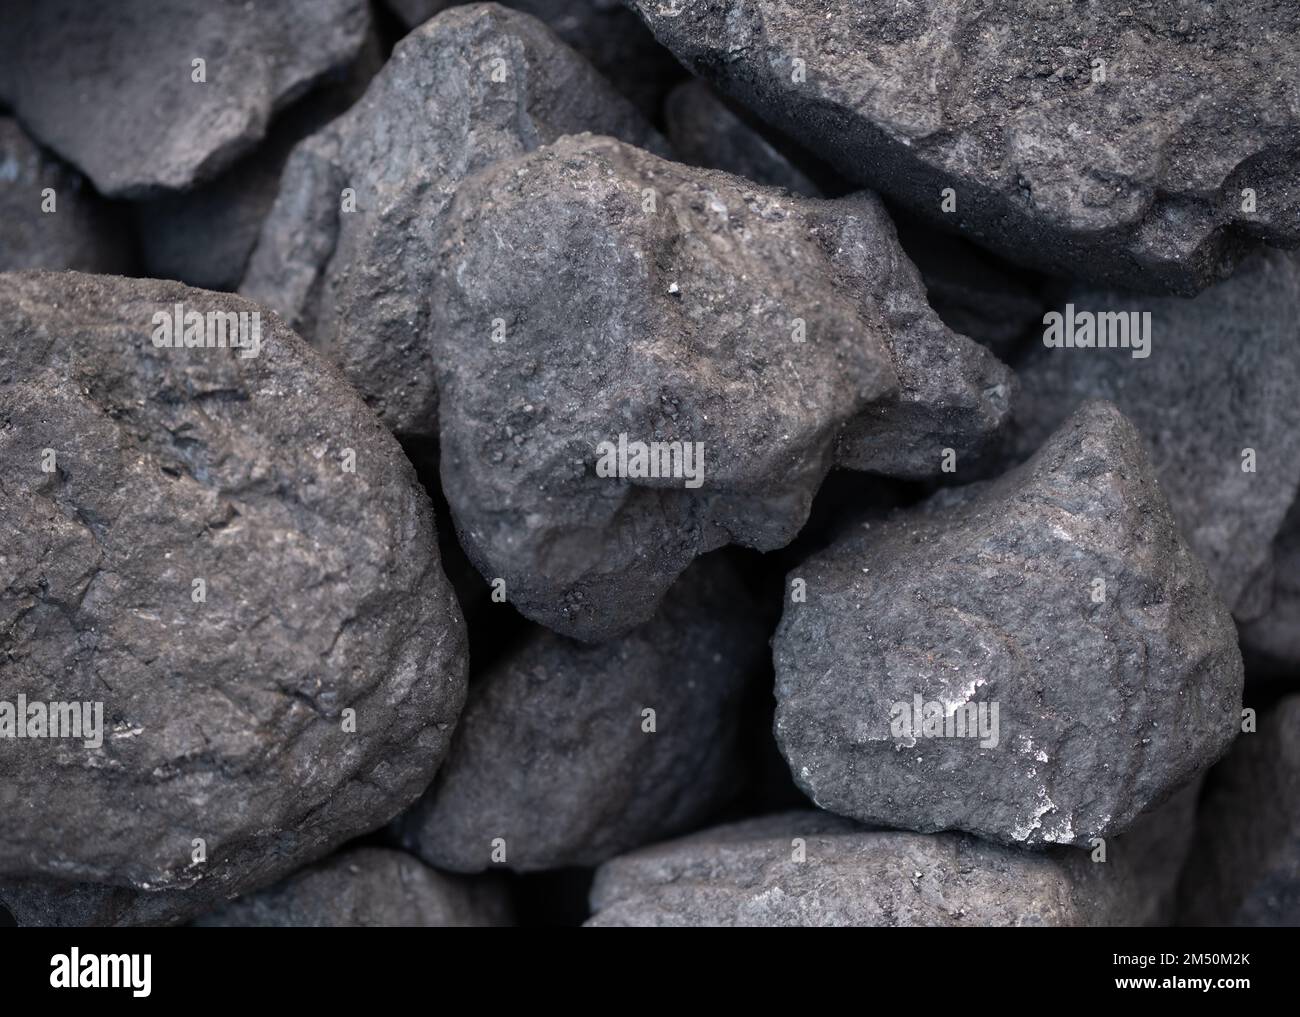 Résumé contexte texture du charbon, combustible fossile irresponsable Banque D'Images